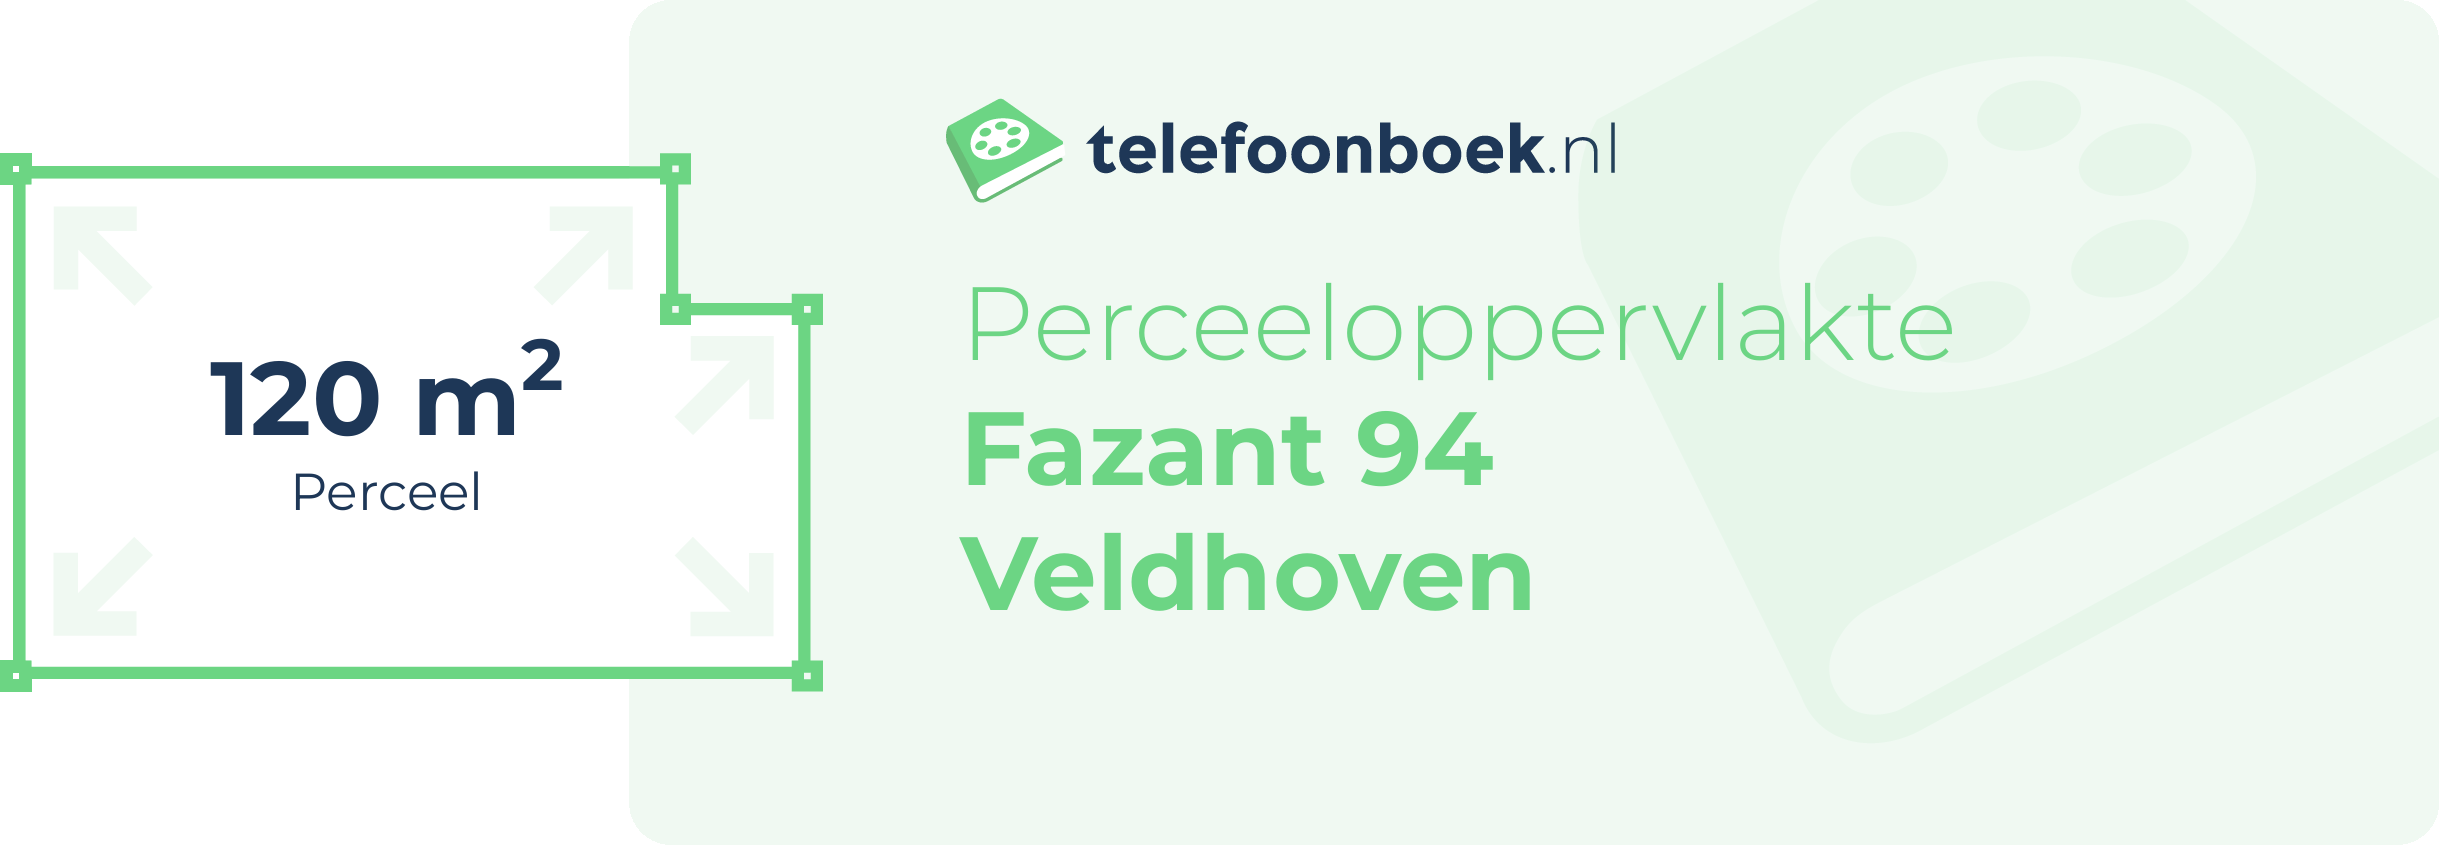 Perceeloppervlakte Fazant 94 Veldhoven